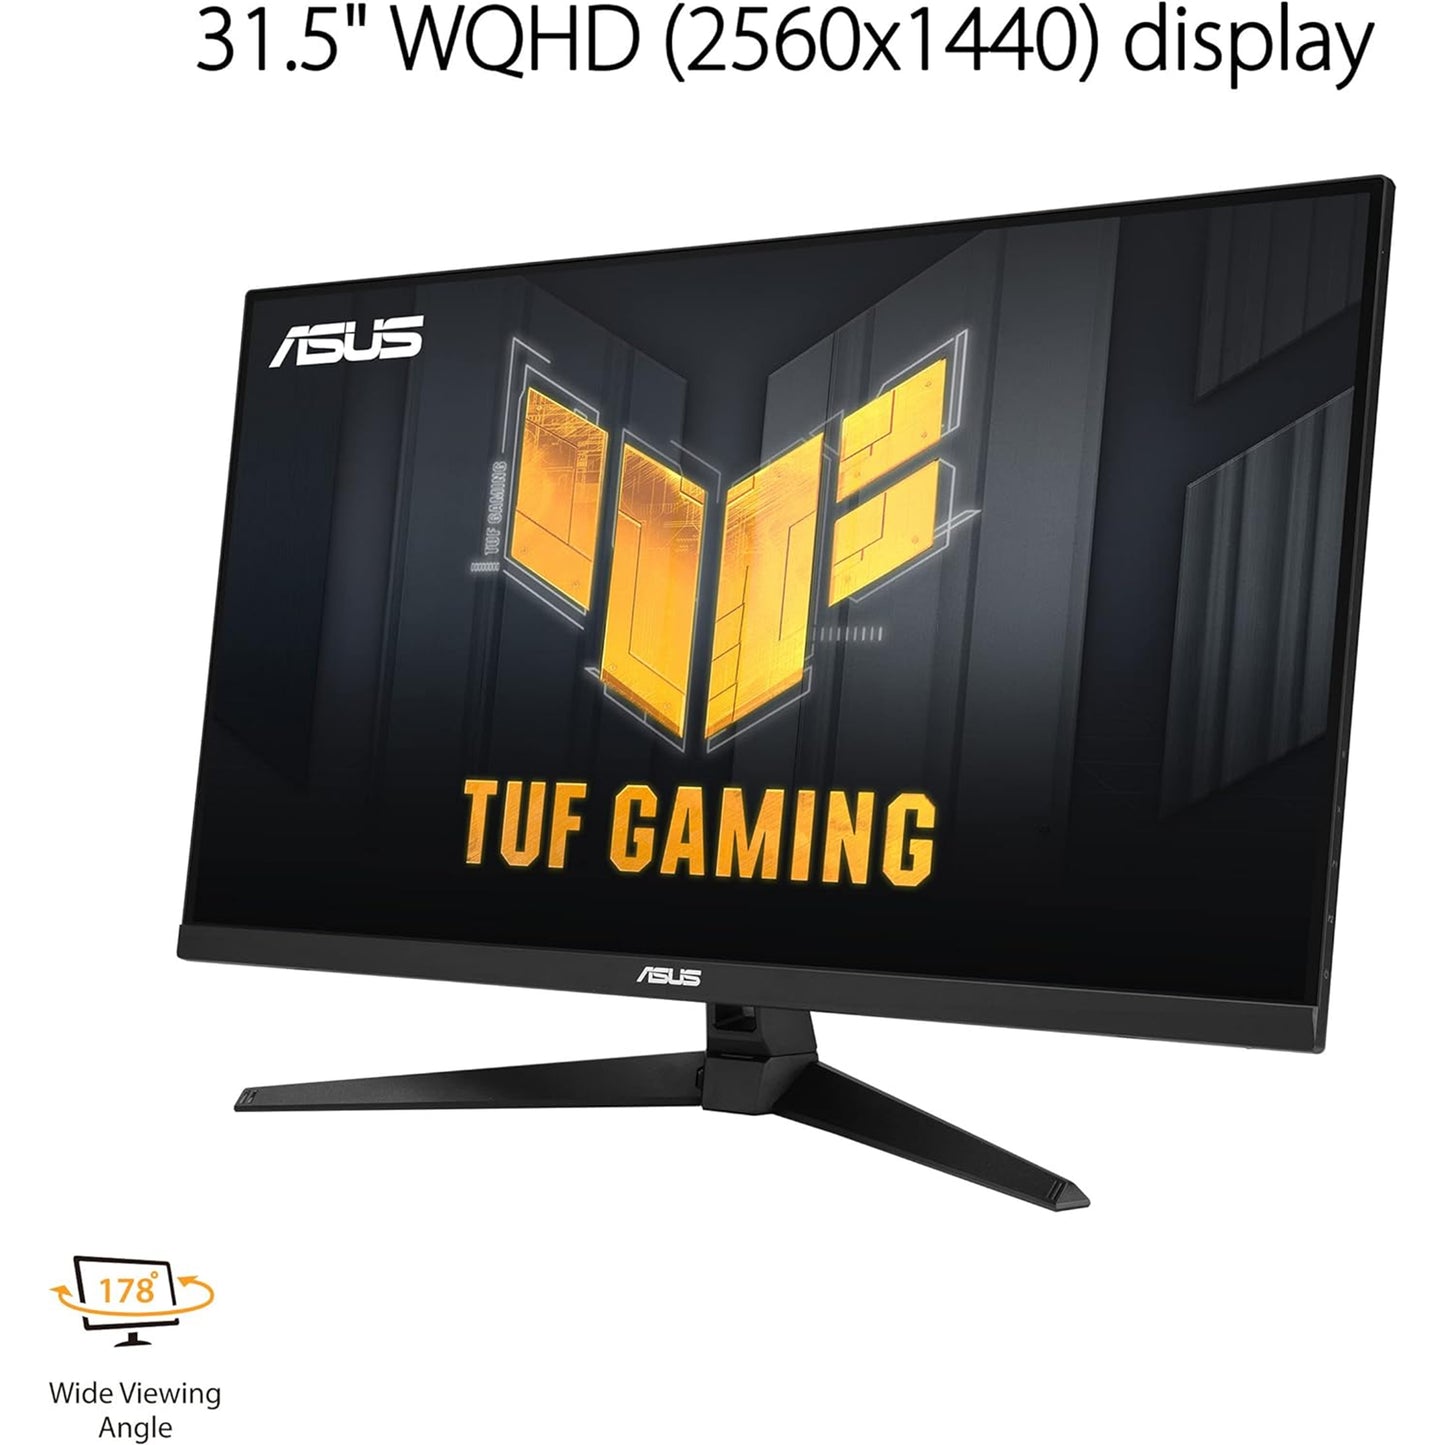 شاشة ASUS TUF Gaming مقاس 31.5 بوصة بدقة 1440 بكسل HDR (VG32AQA1A) - QHD (2560 × 1440)، 170 هرتز، 1 مللي ثانية، طمس حركة منخفض للغاية، FreeSync Premium، DisplayPort، HDMI، HDR-10، Shadow Boost، قابل للتركيب على الحائط VESA، أسود 